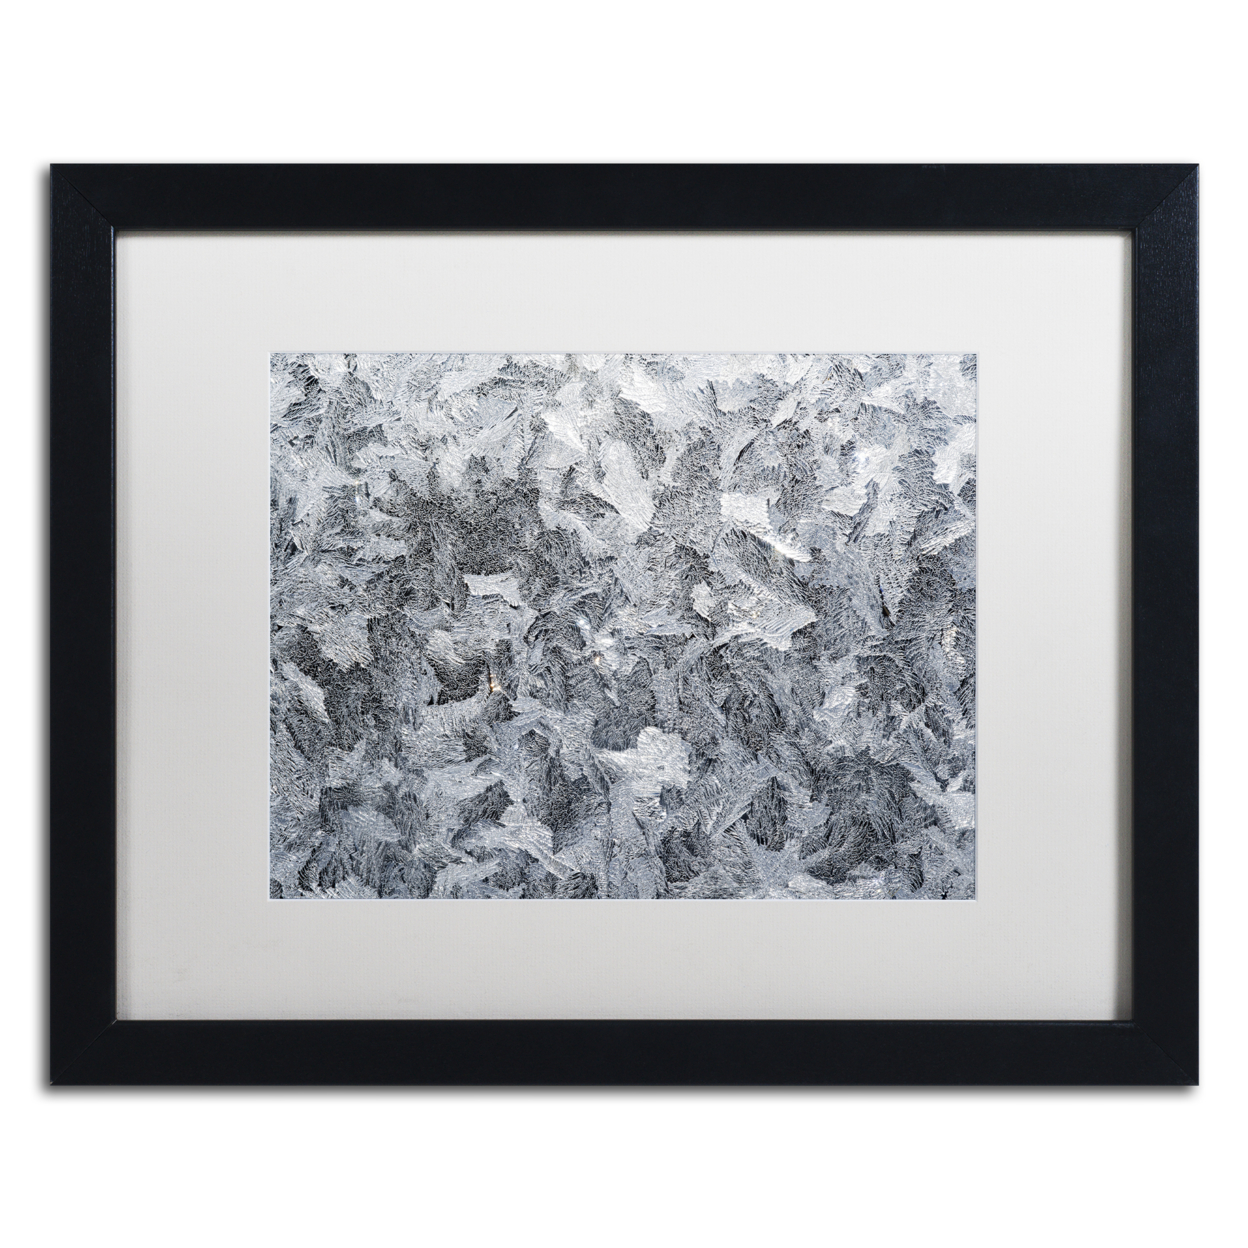 Kurt Shaffer 'Frost Mosaic' Black Wooden Framed Art 18 X 22 Inches